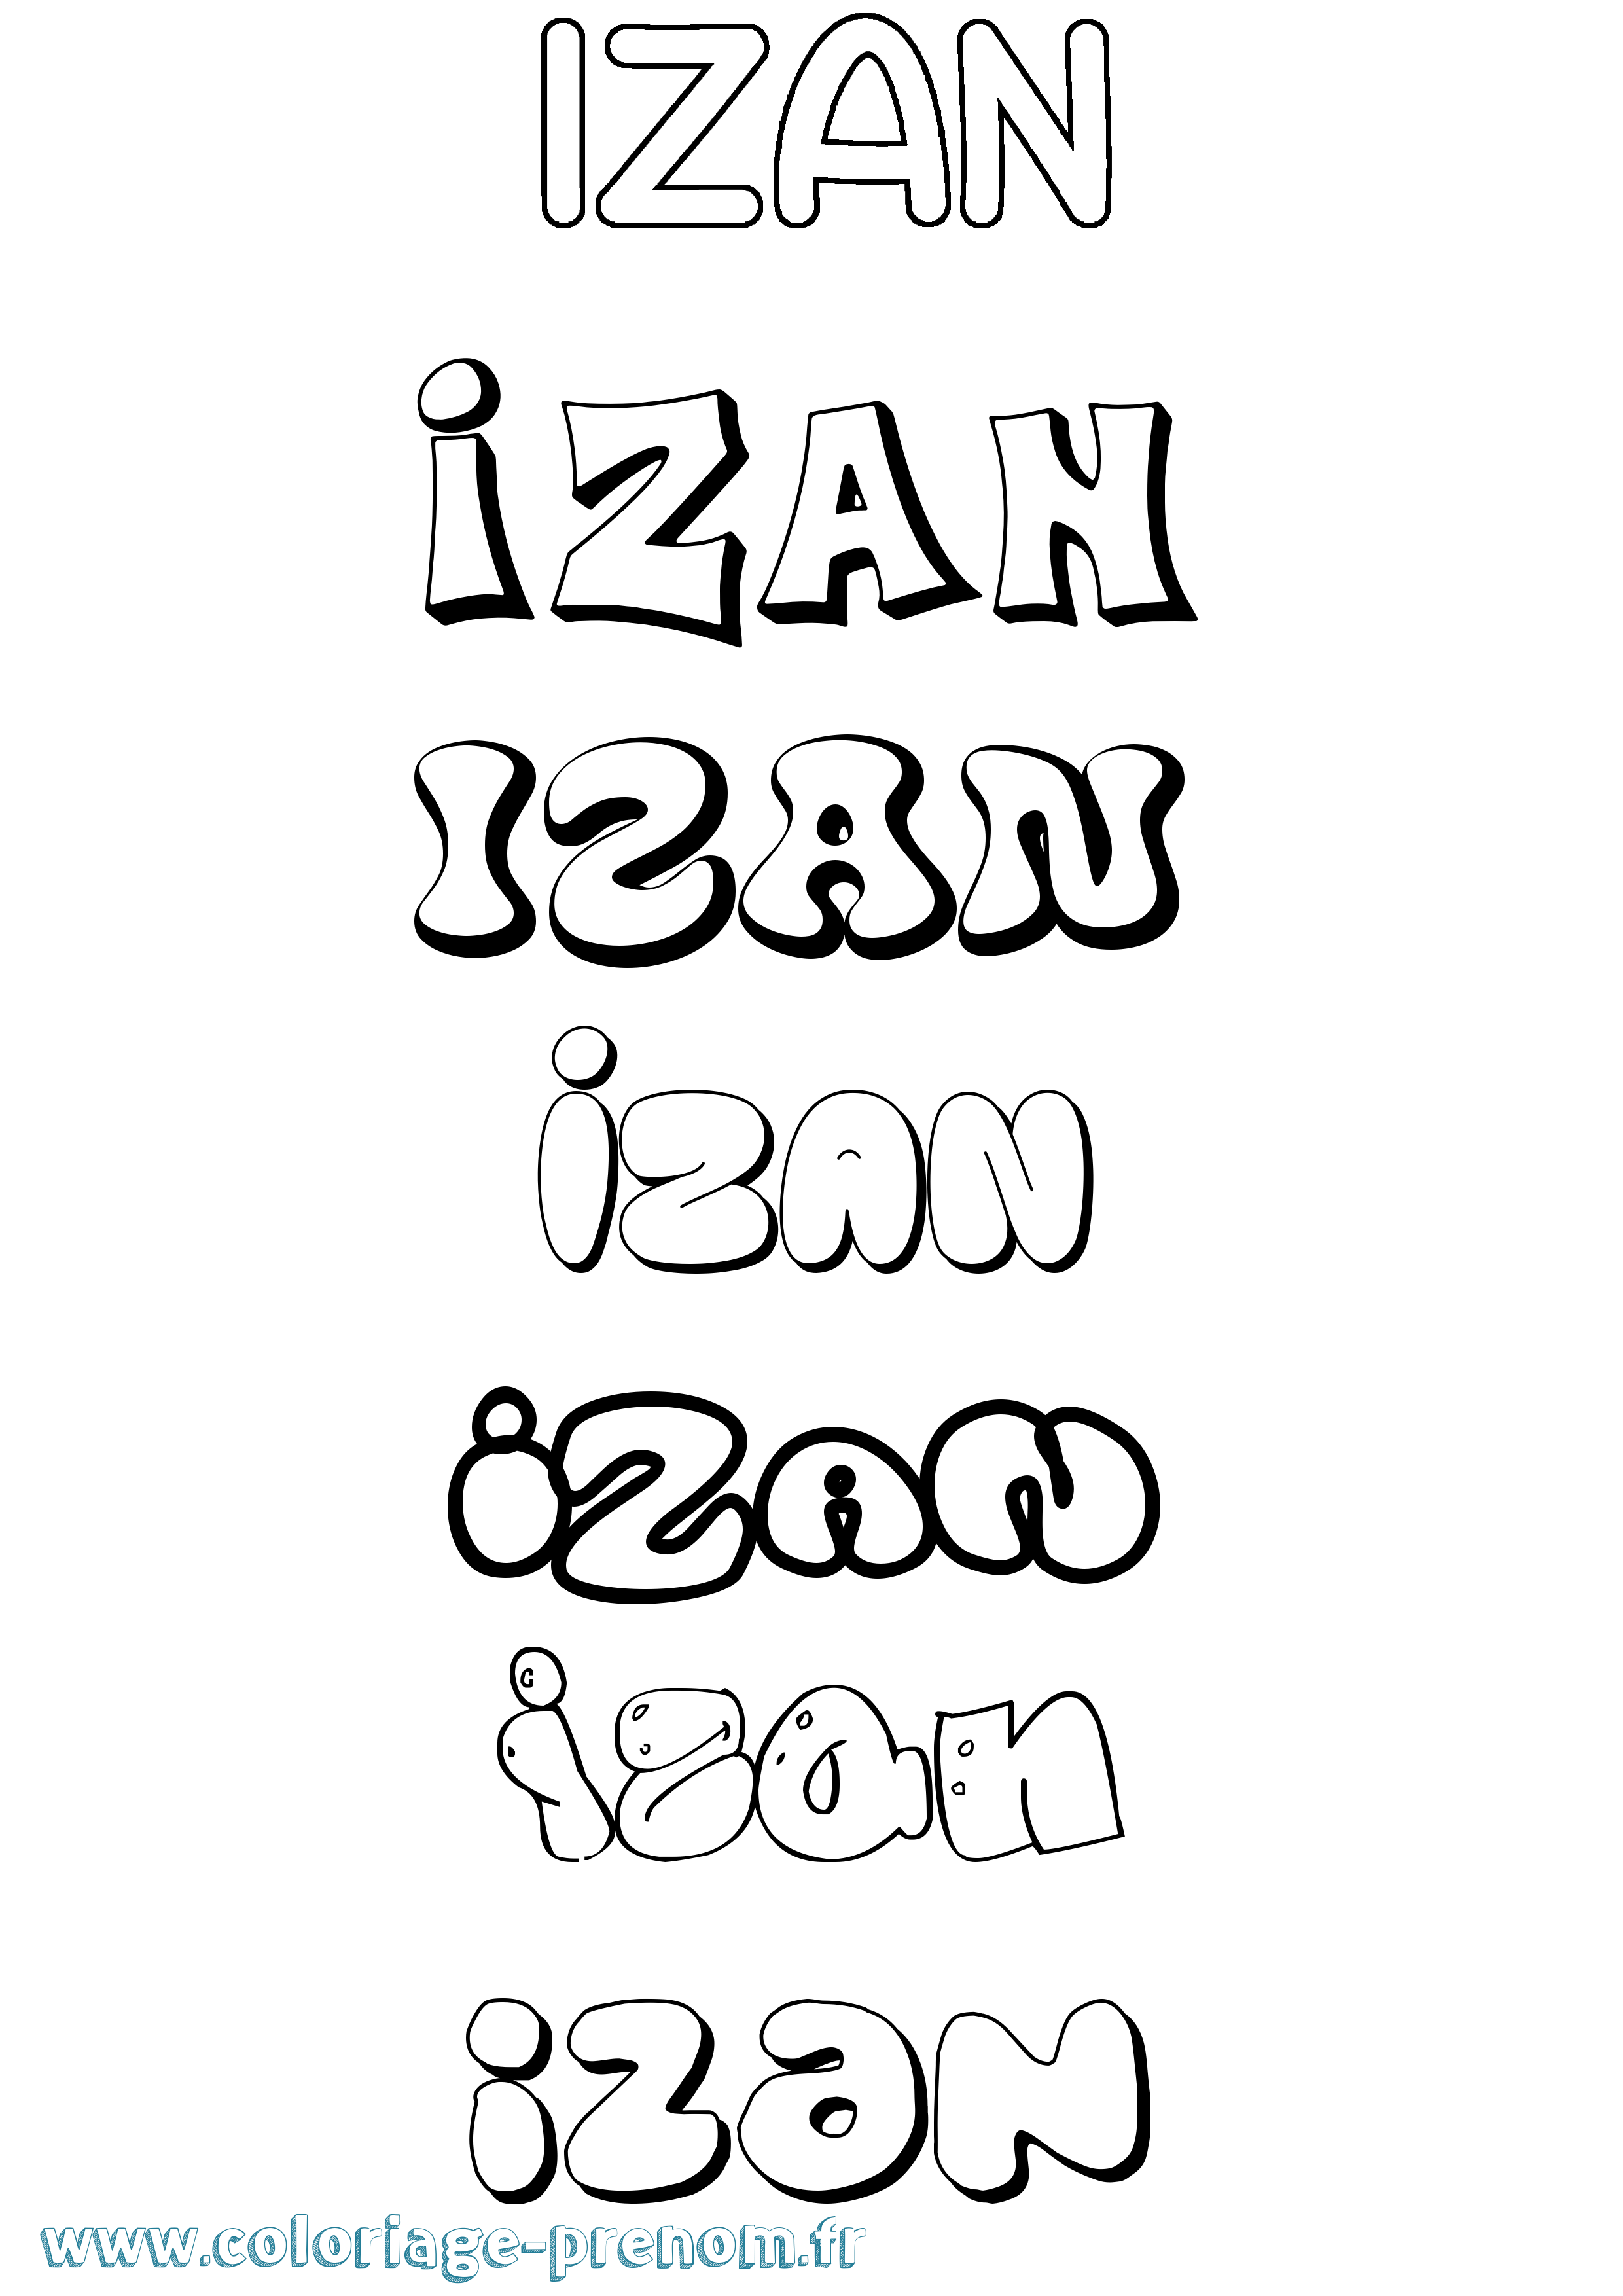 Coloriage prénom Izan Bubble